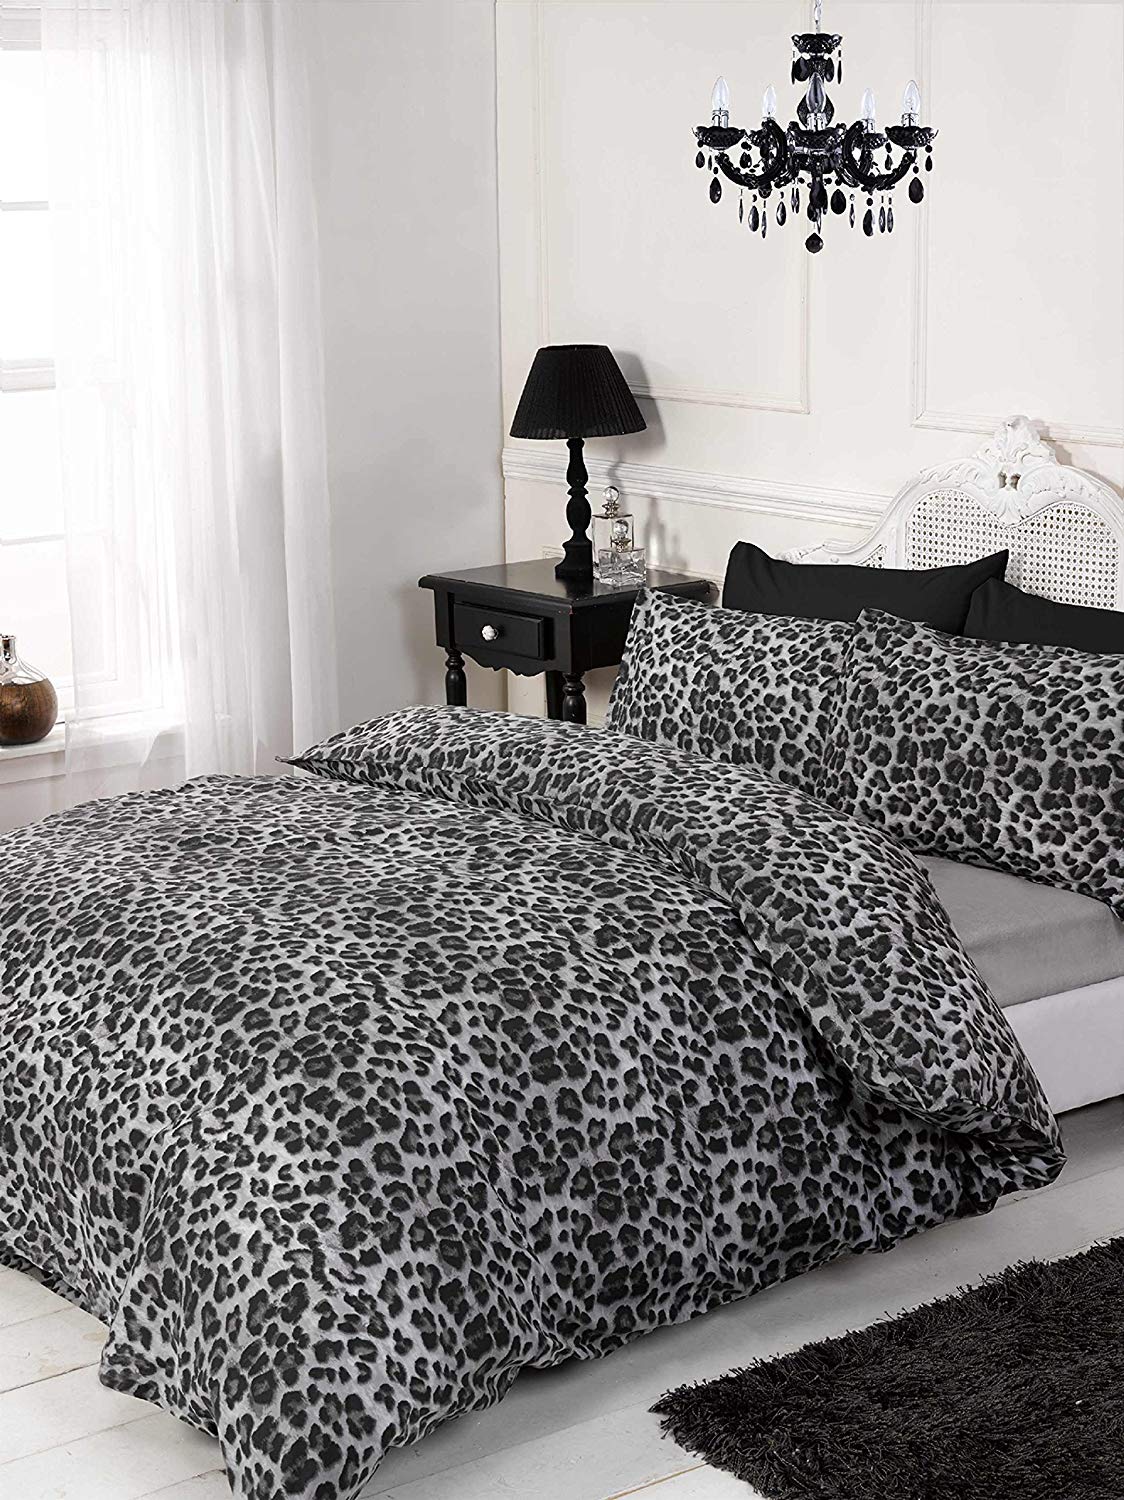 Juego de cama estilo leopardo de Rapport solo 16,5€